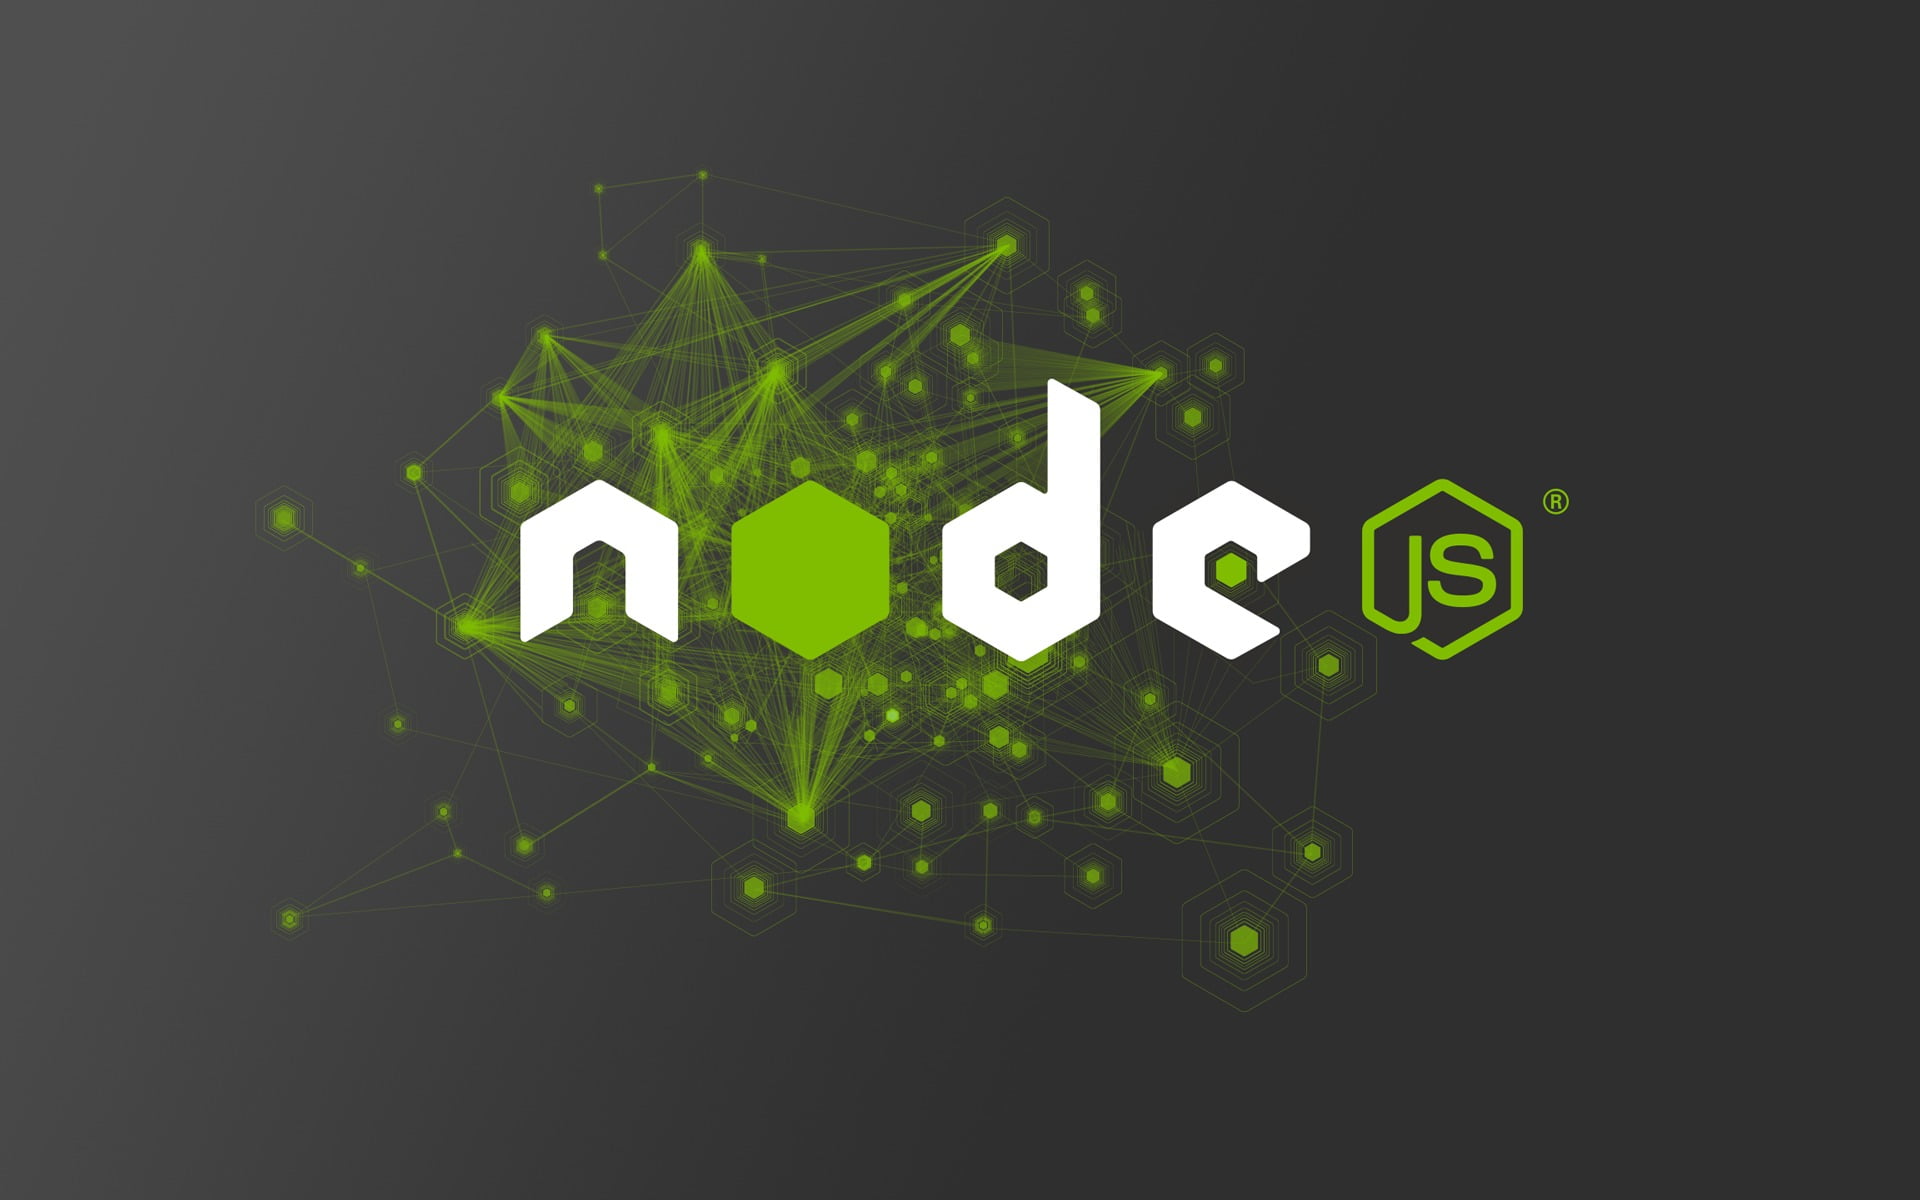 HD Wallpaper Black And Green Text Node Js Javascript Studio